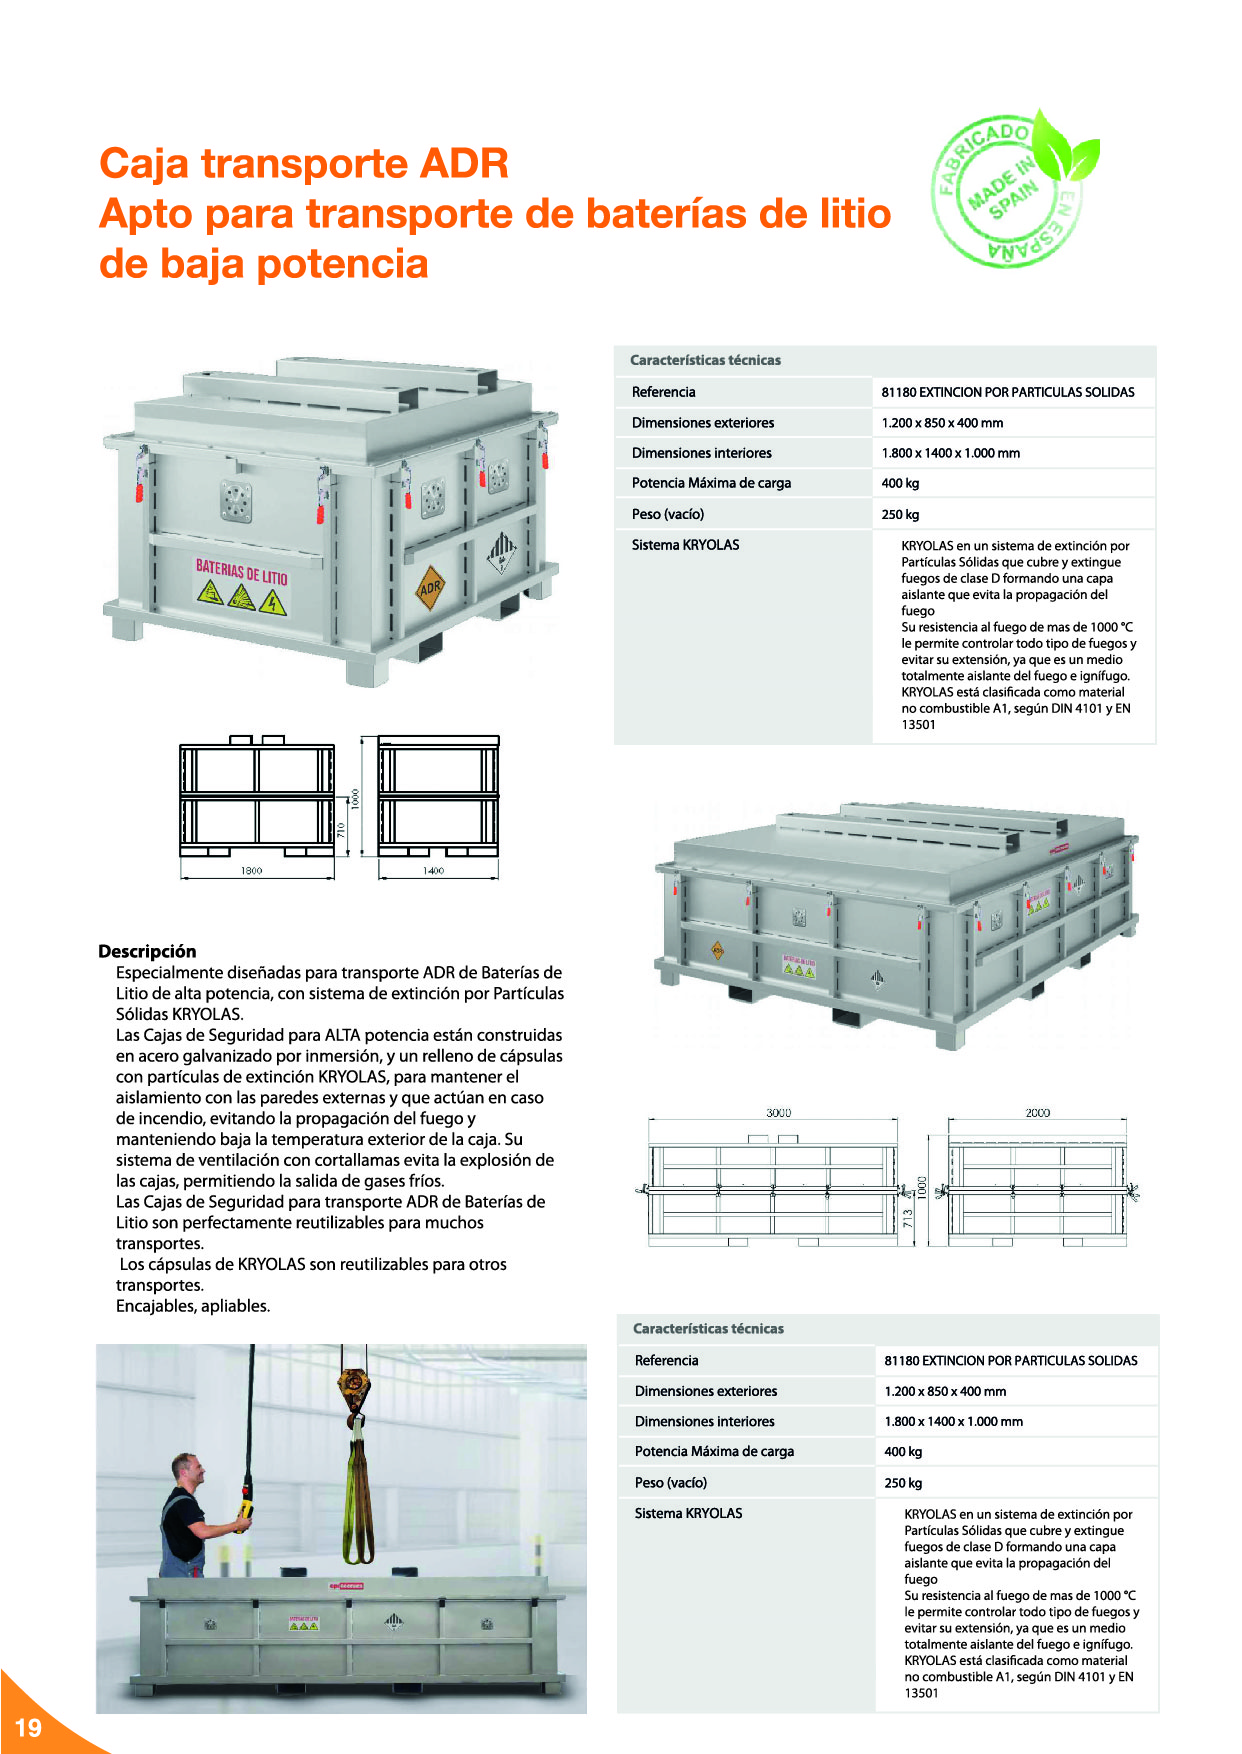 Baterías de litio: Seguridad para el almacenamiento, carga y transporte20